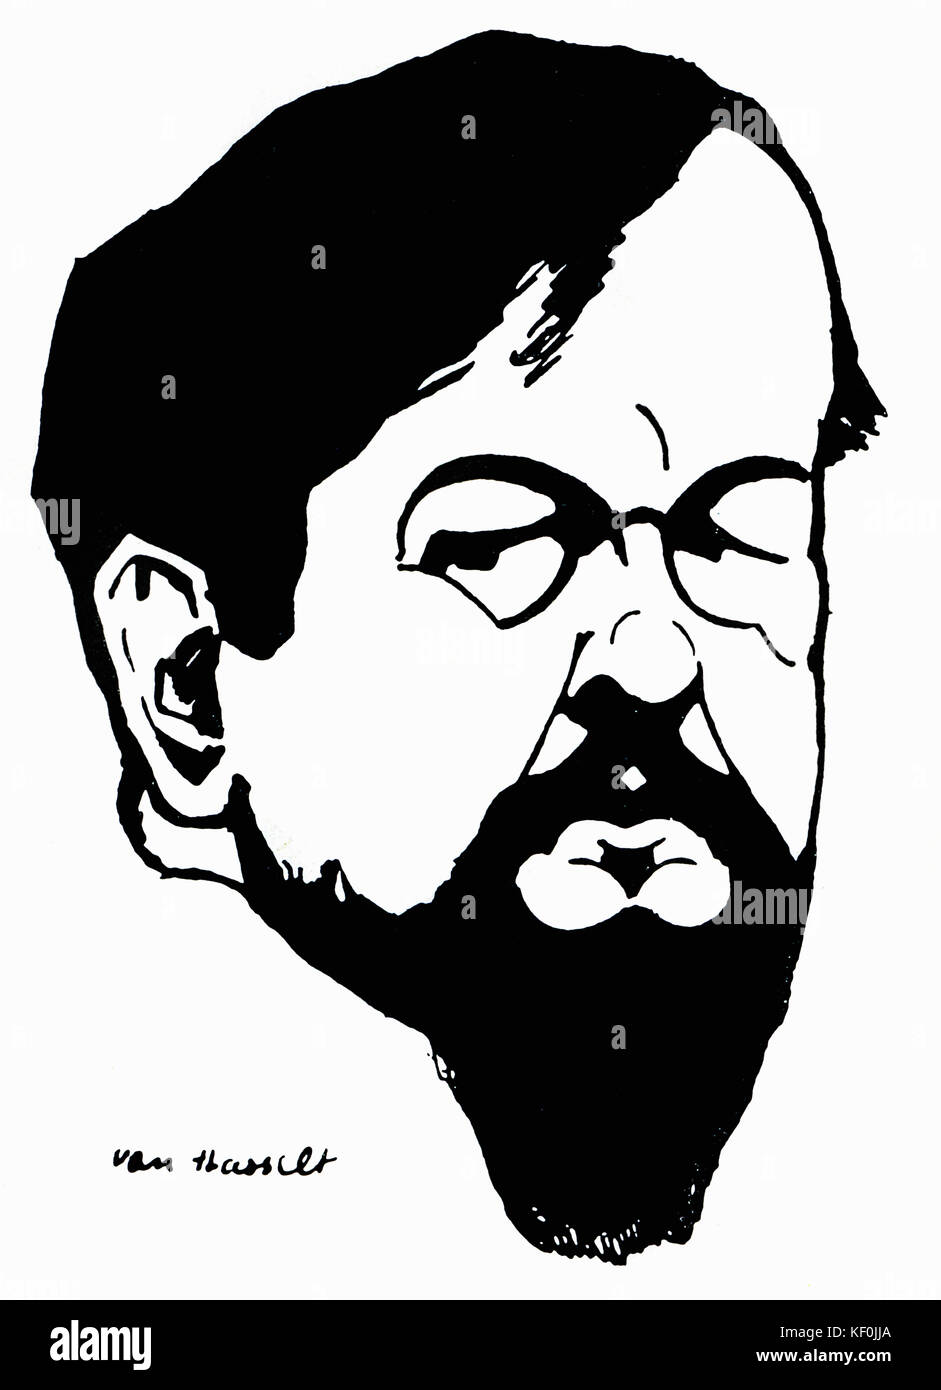 Claude Debussy - vignette Portrait von Van Hasselt (Daten nicht bekannt), Anfang des 20. Jahrhunderts. CD: der französische Komponist, 22. August 1862 - 25. März 1918. Stockfoto